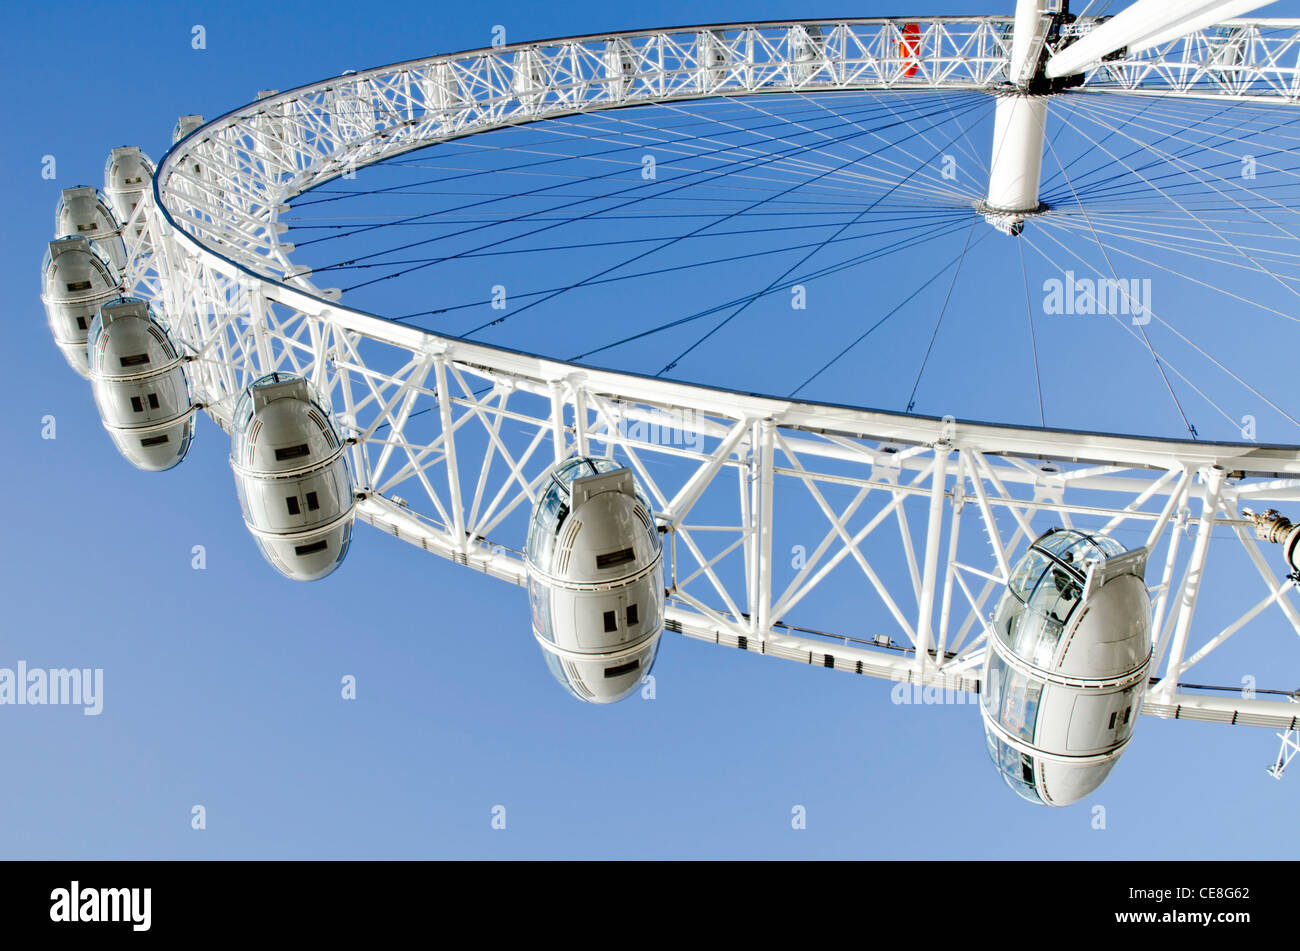 Das London Eye (Millennium Wheel) Riesenrad am Südufer der Themse im Stadtteil Lambeth, London, England, UK. Stockfoto